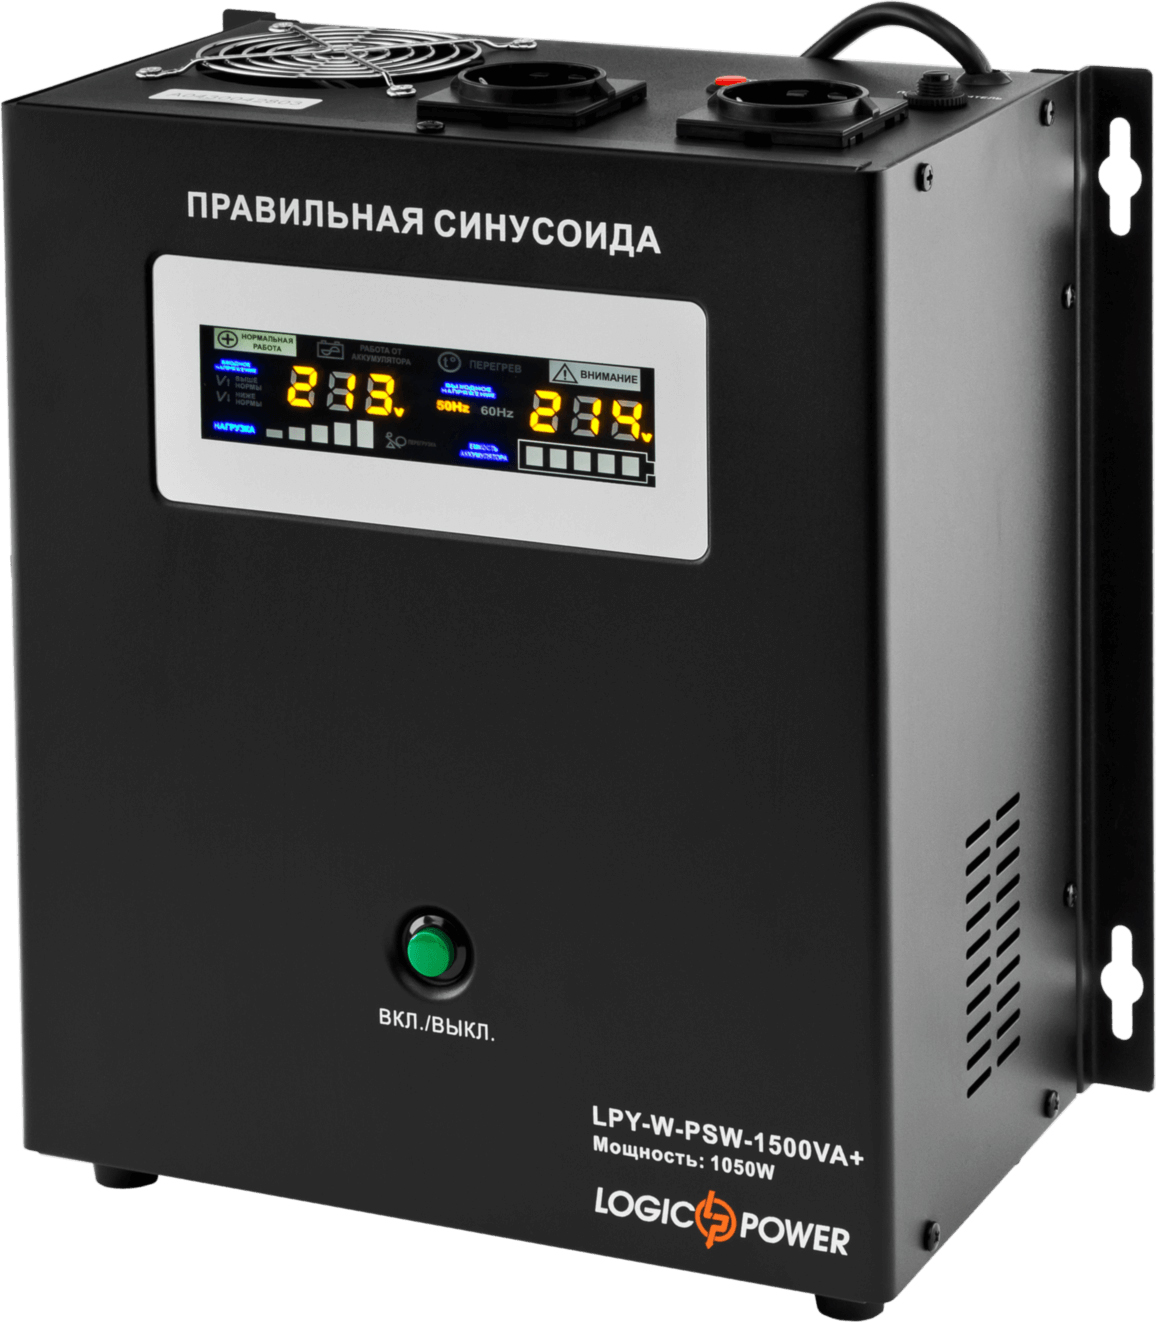 ДБЖ LogicPower LPY-W-PSW-1500VA+ (1050 Вт) 10A/15A (LP4145) в Києві